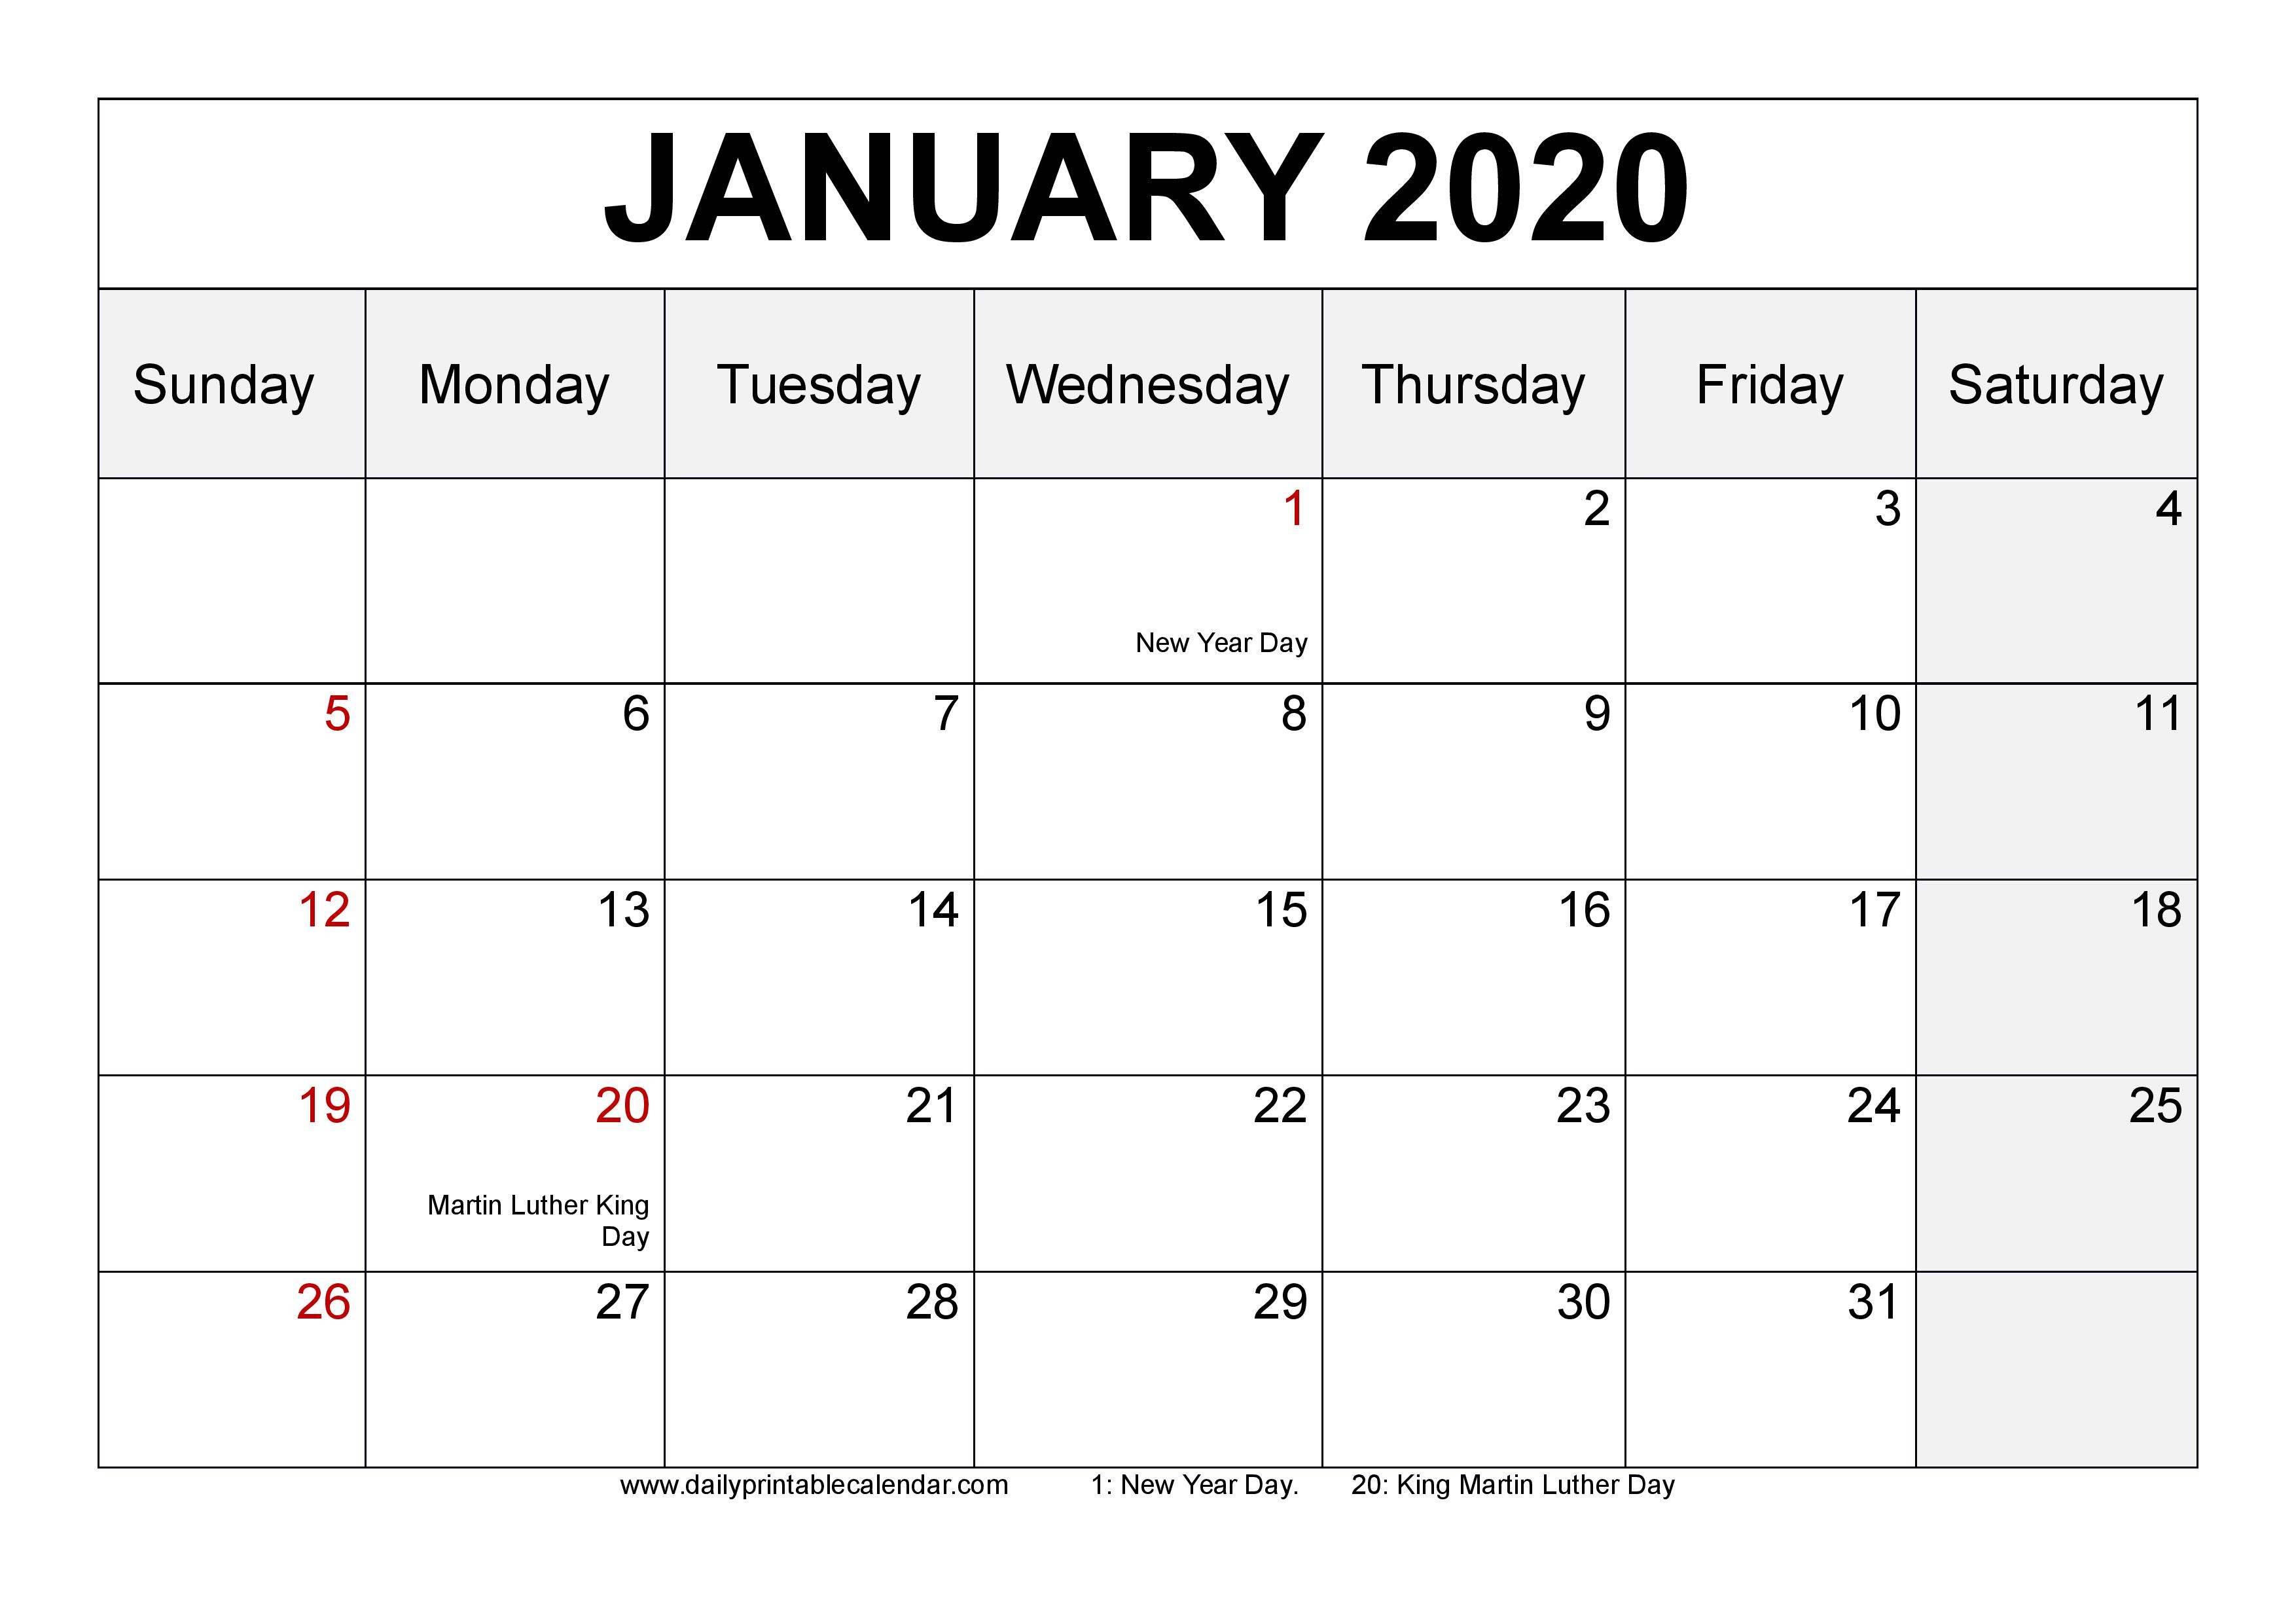 January 2020 Calendar Printable  Blank Templates  2020 inside Show Calendar For January 2020